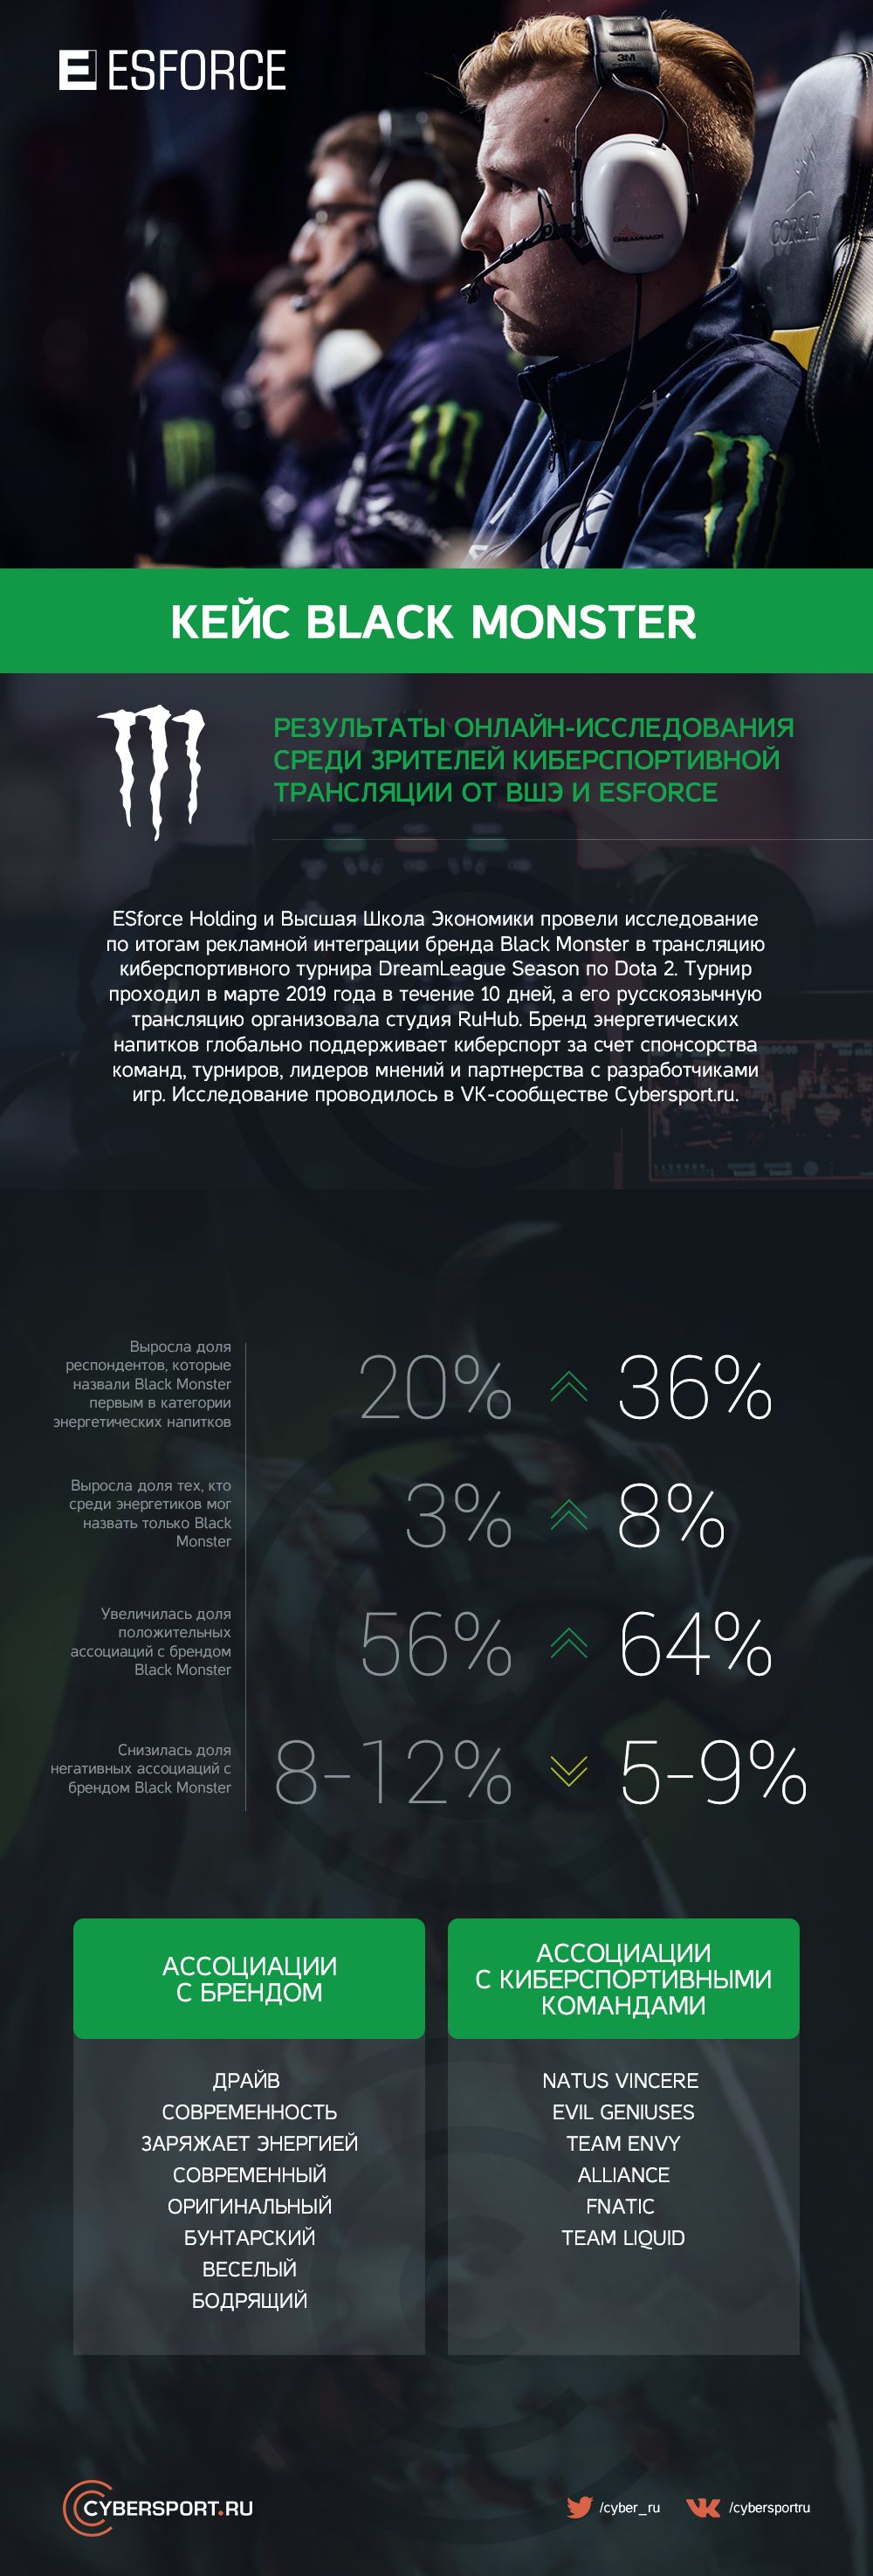 Инфографика от Cybersport.ru